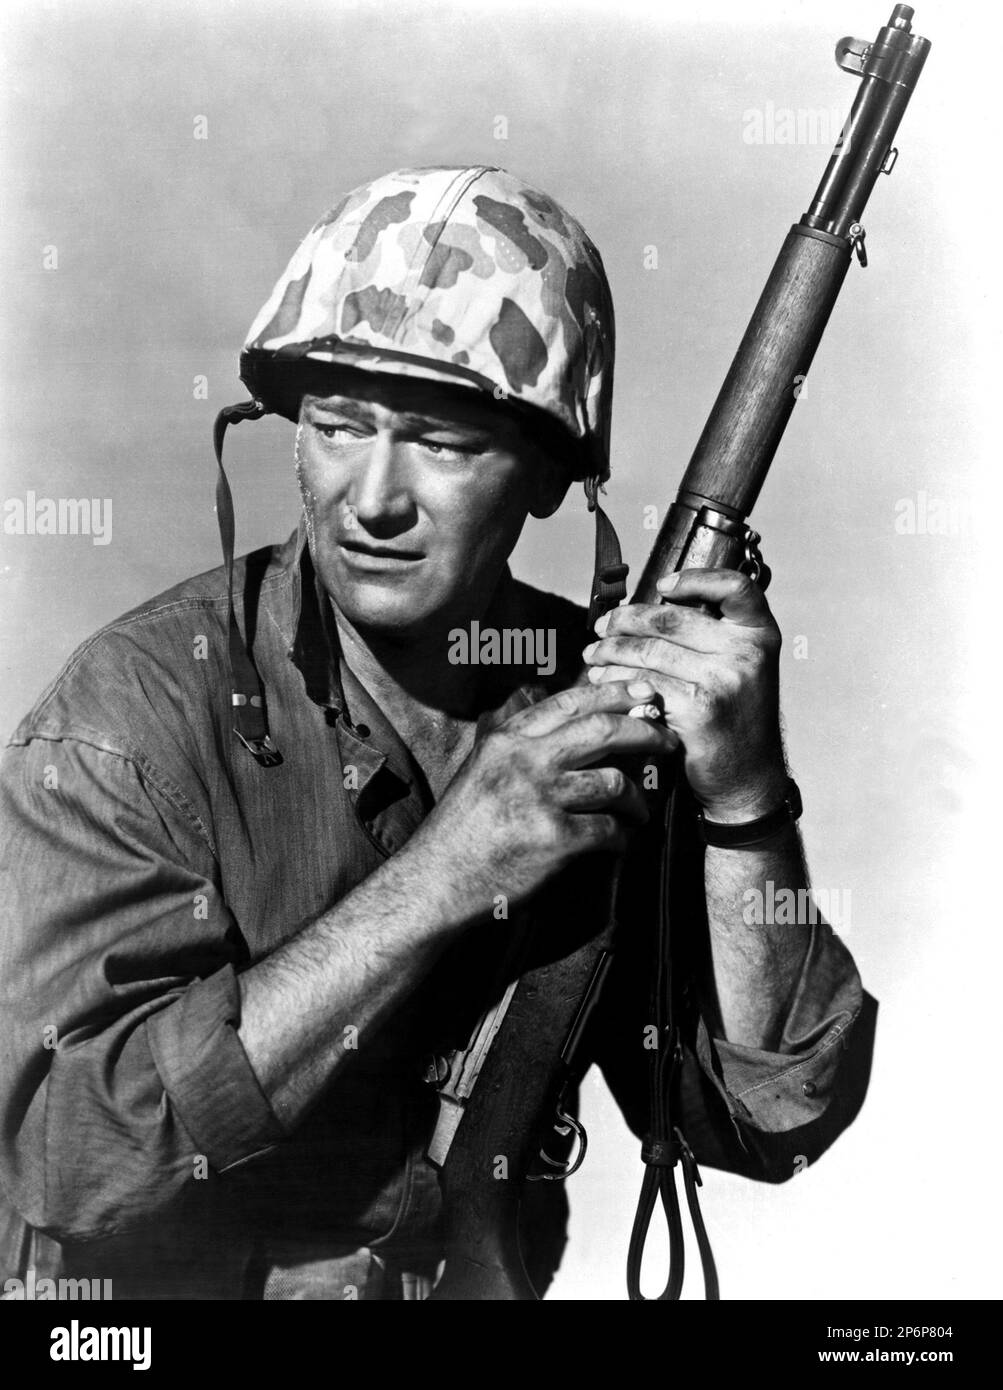 1949 : die gefeierten Filmschauspieler JOHN WAYNE in einem publizistischen Film für DEN Film SANDS OF IWO JIMA ( Iwo Jima , deserto di fuoco ) von Allan Dwan , Aus einem Roman von Brown - CINEMA - ATTORE CINEMATOGRAFICO - Helm - Elmetto - SCHLACHT - BATTAGLIA - Militäruniform - Divisa uniforme militare - FILM - fucile - Waffe - arma - Archivio GBB Stockfoto